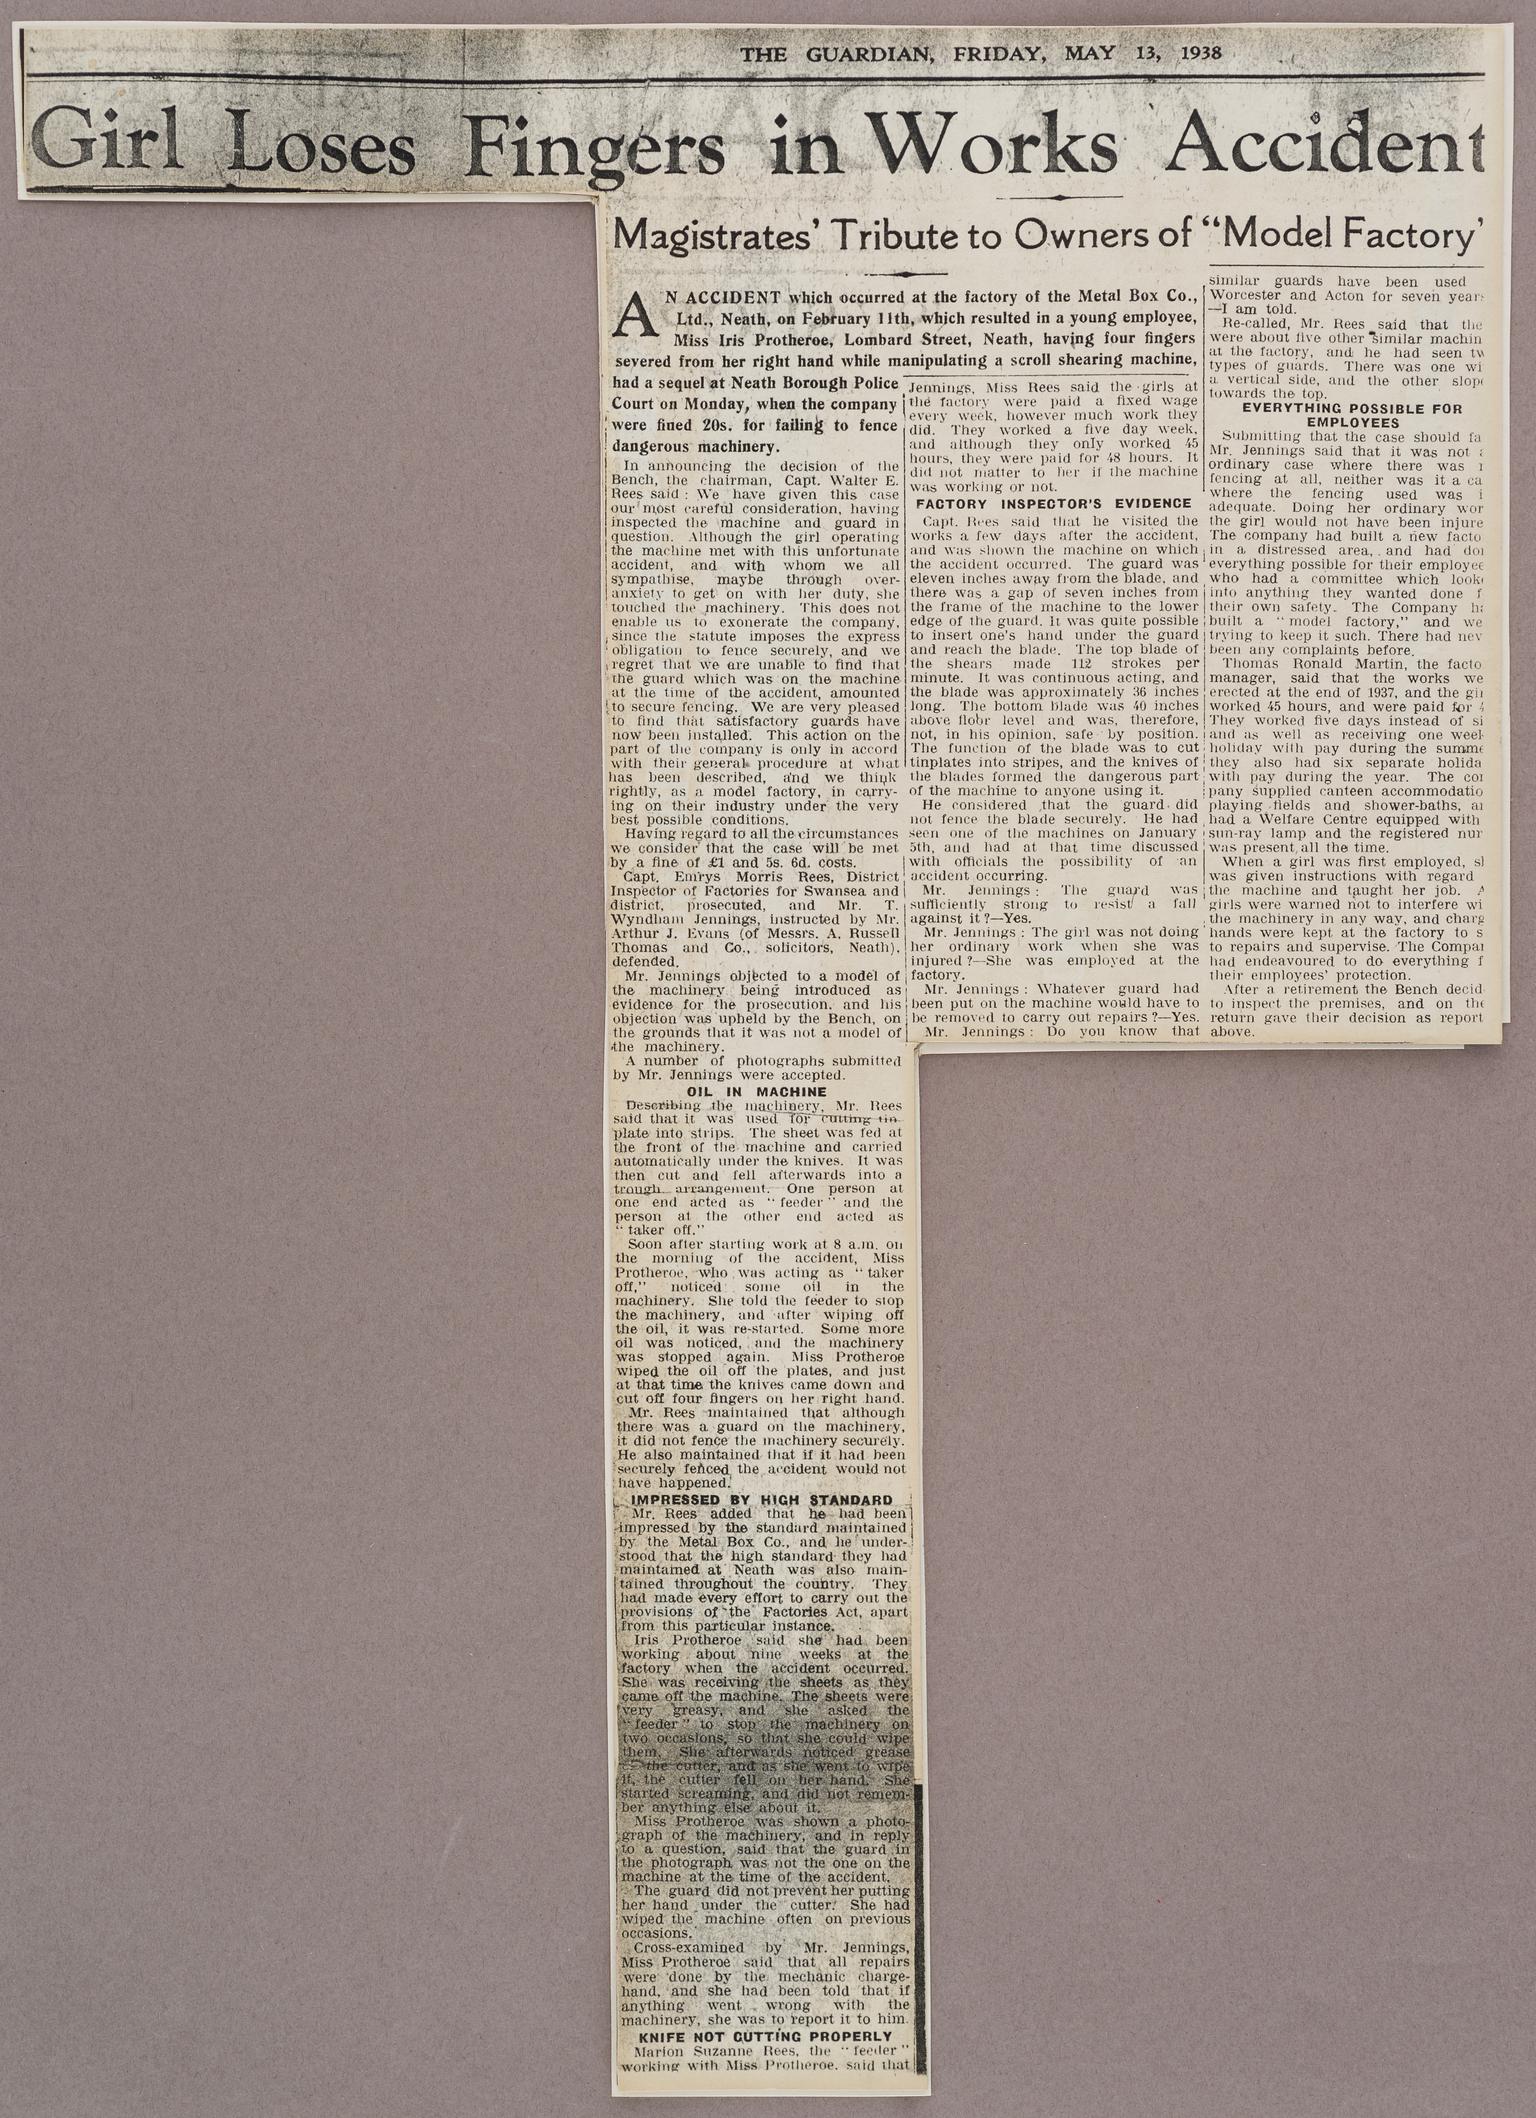 Newspaper cutting